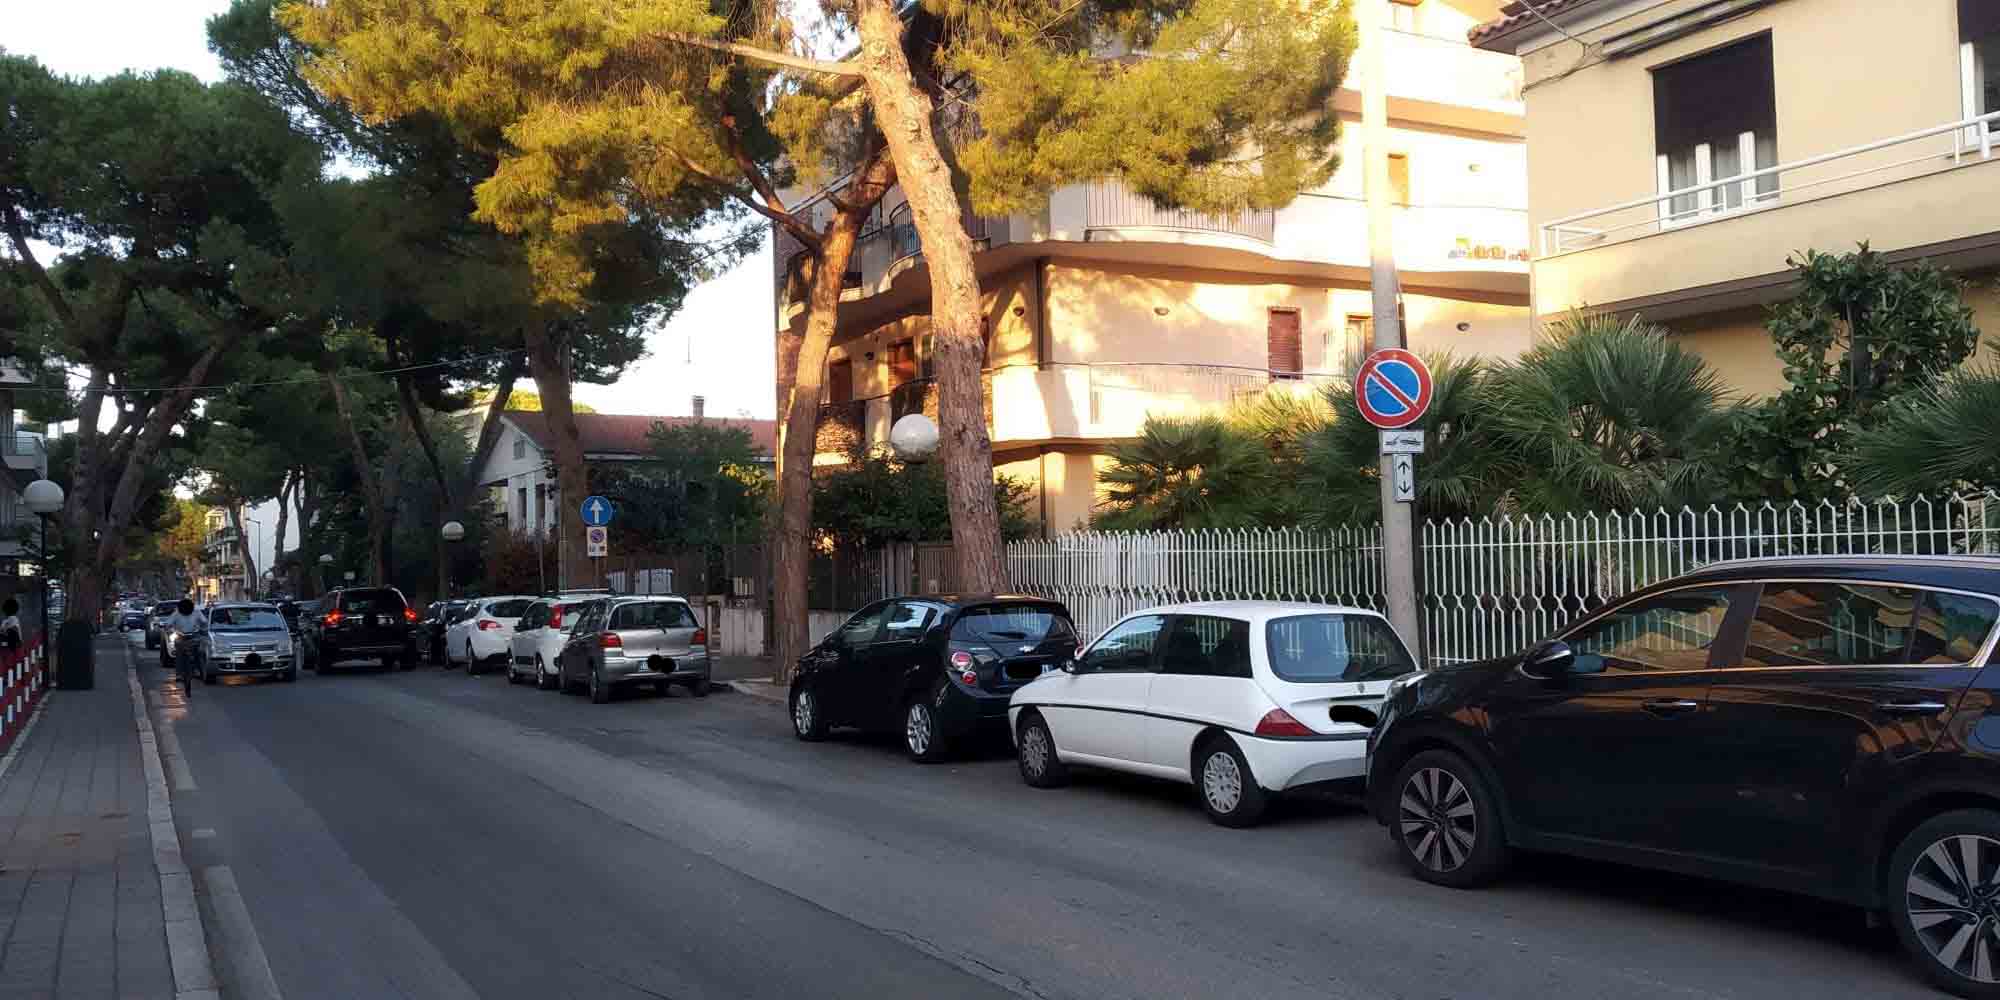 Pescara: lungo Via del Santuario fila di macchine in sosta in corrispondenza del divieto